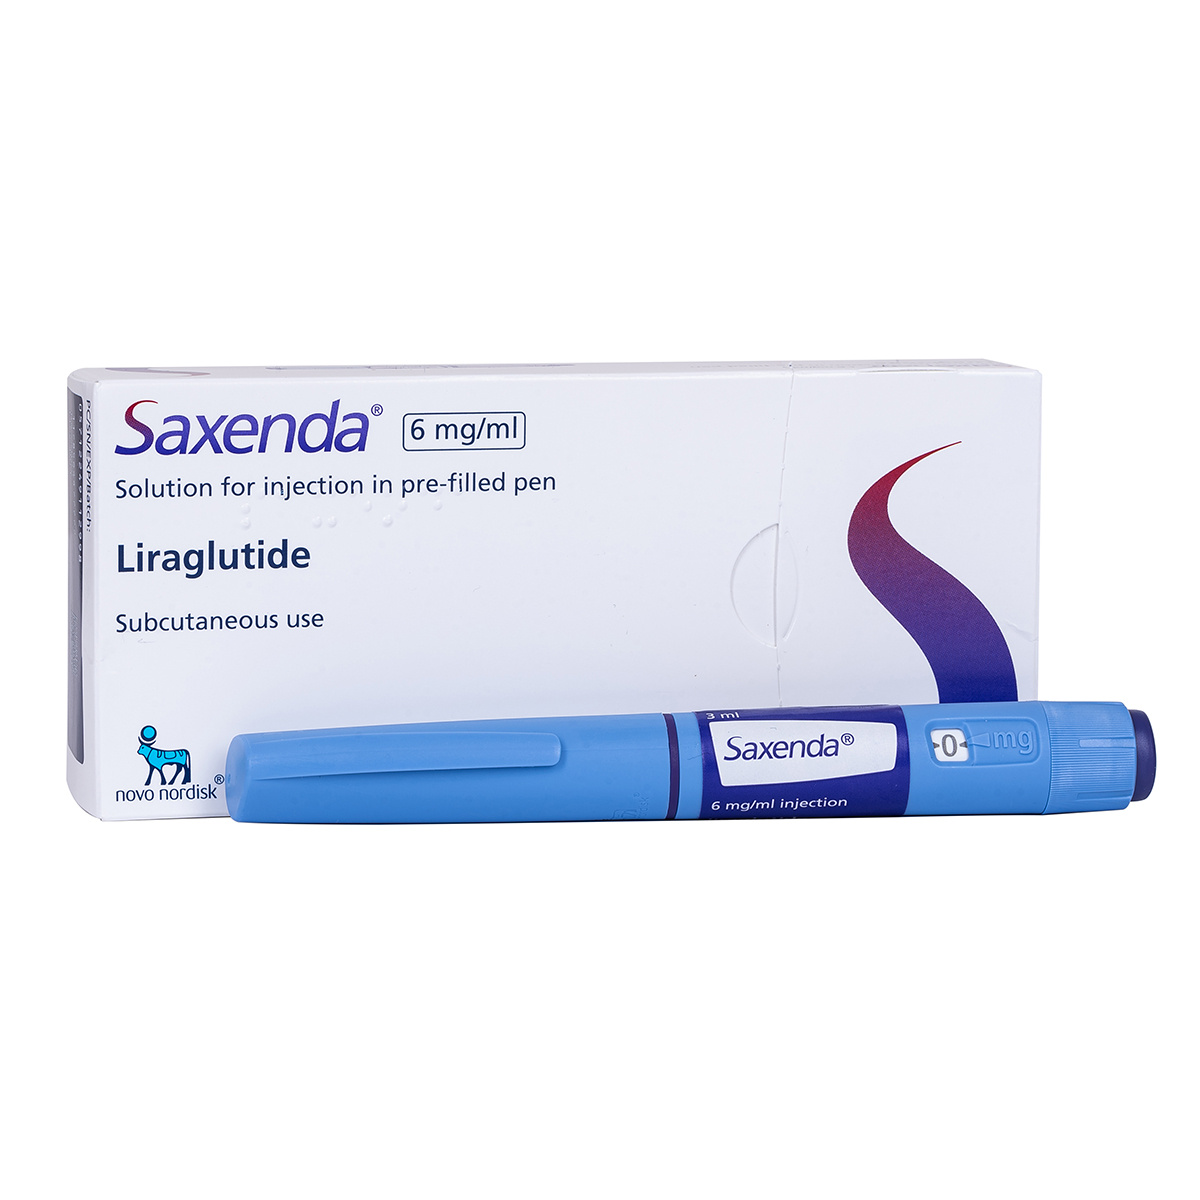 how-long-do-saxenda-pens-last-uk-meds